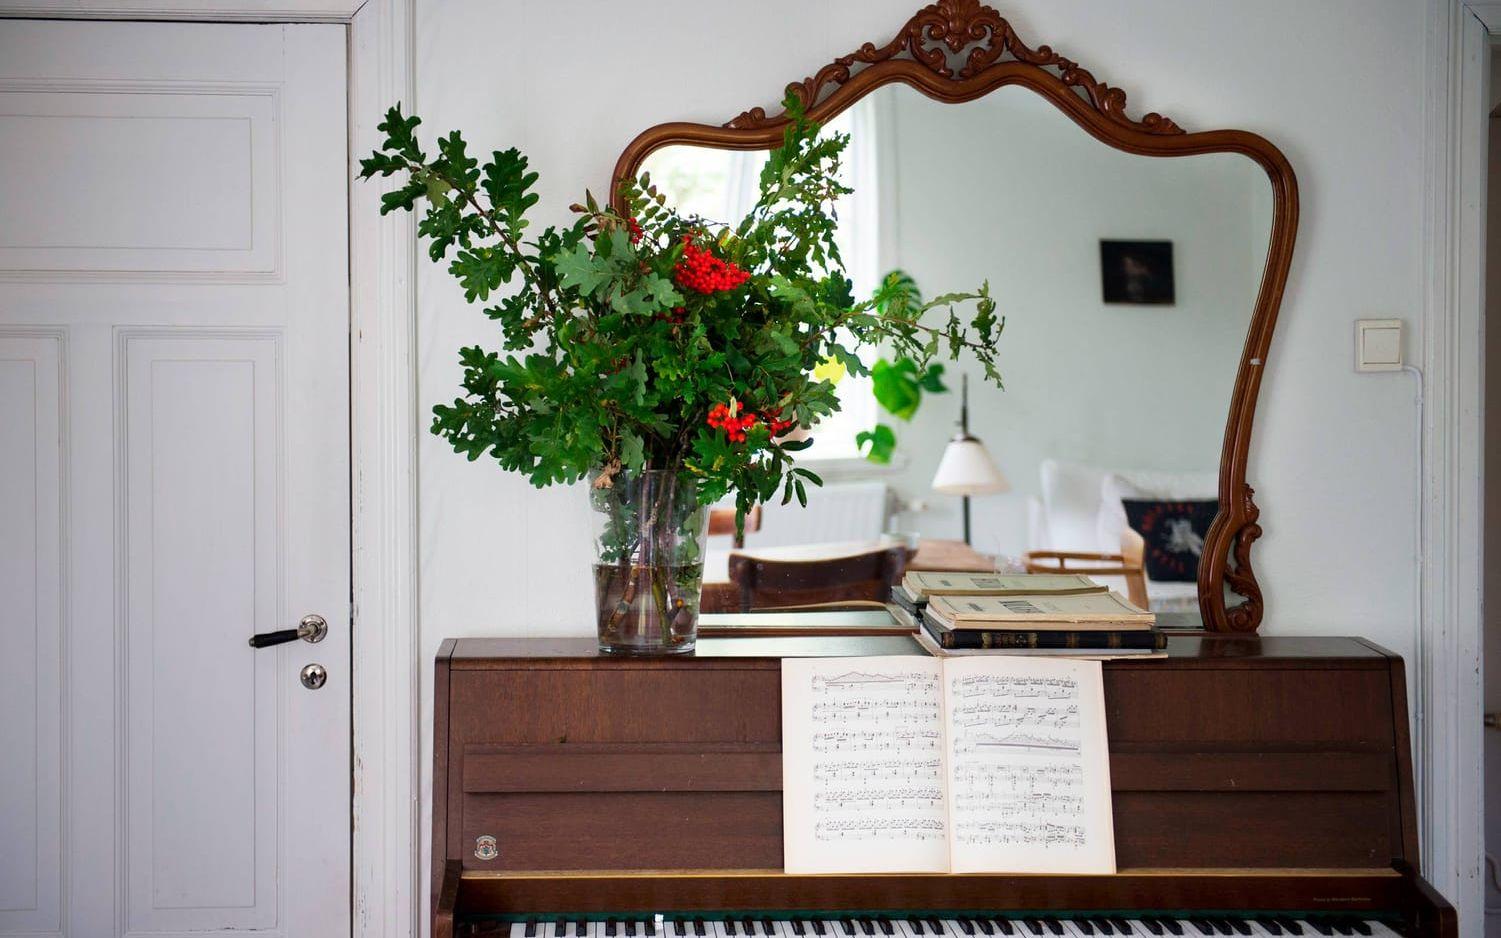 Ovanpå pianot står en spegel som Ida har köpt på auktion samt en stor bukett av kvistar och bär från trädgården – en hållbar bukett.